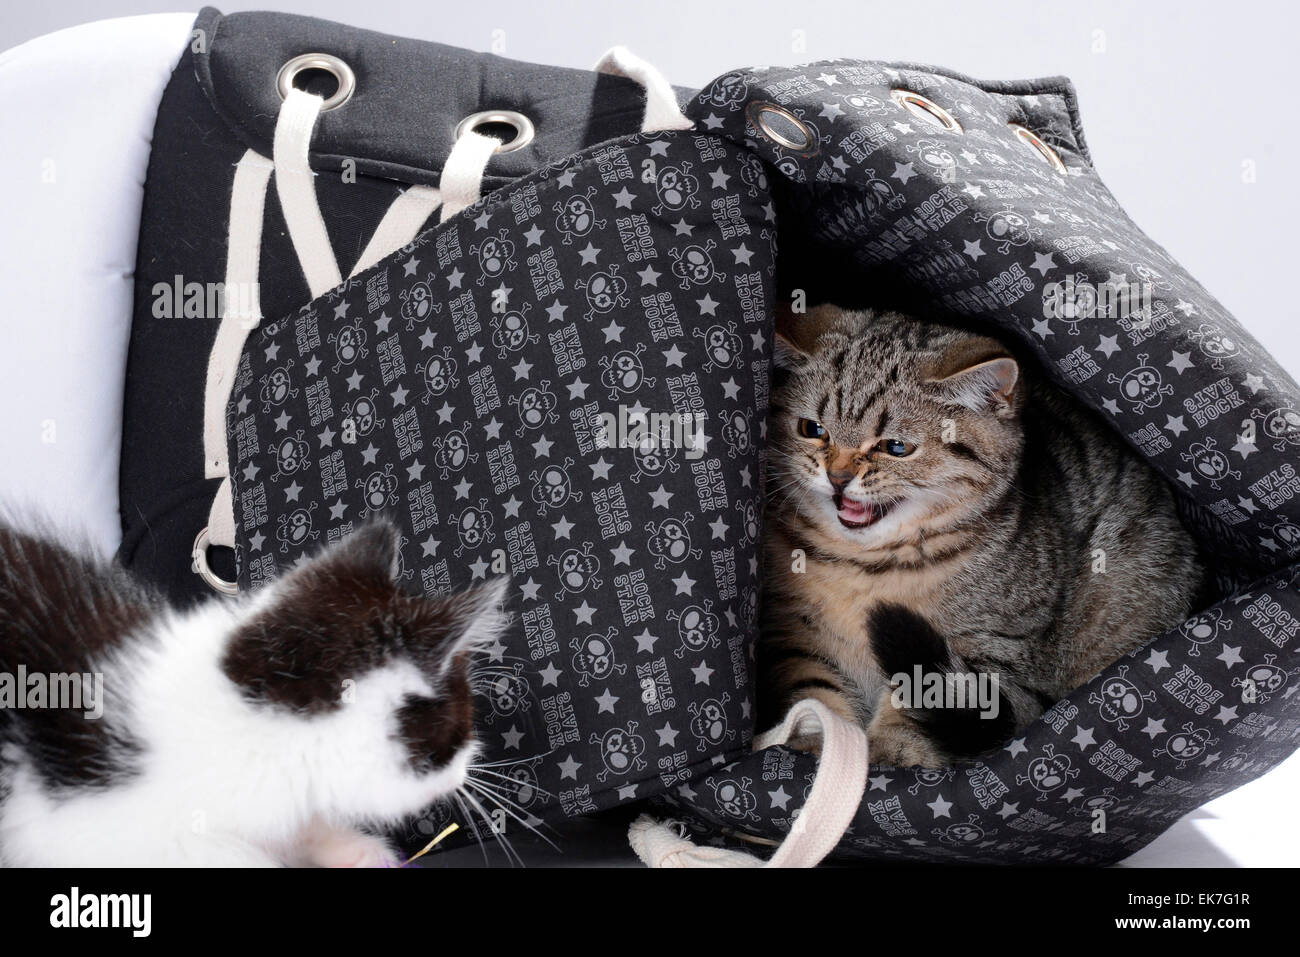 British Shorthair gato gato doméstico atigrado gatito de 3 meses de edad en el silbido en blanco y negro gatito Alemania Foto de stock